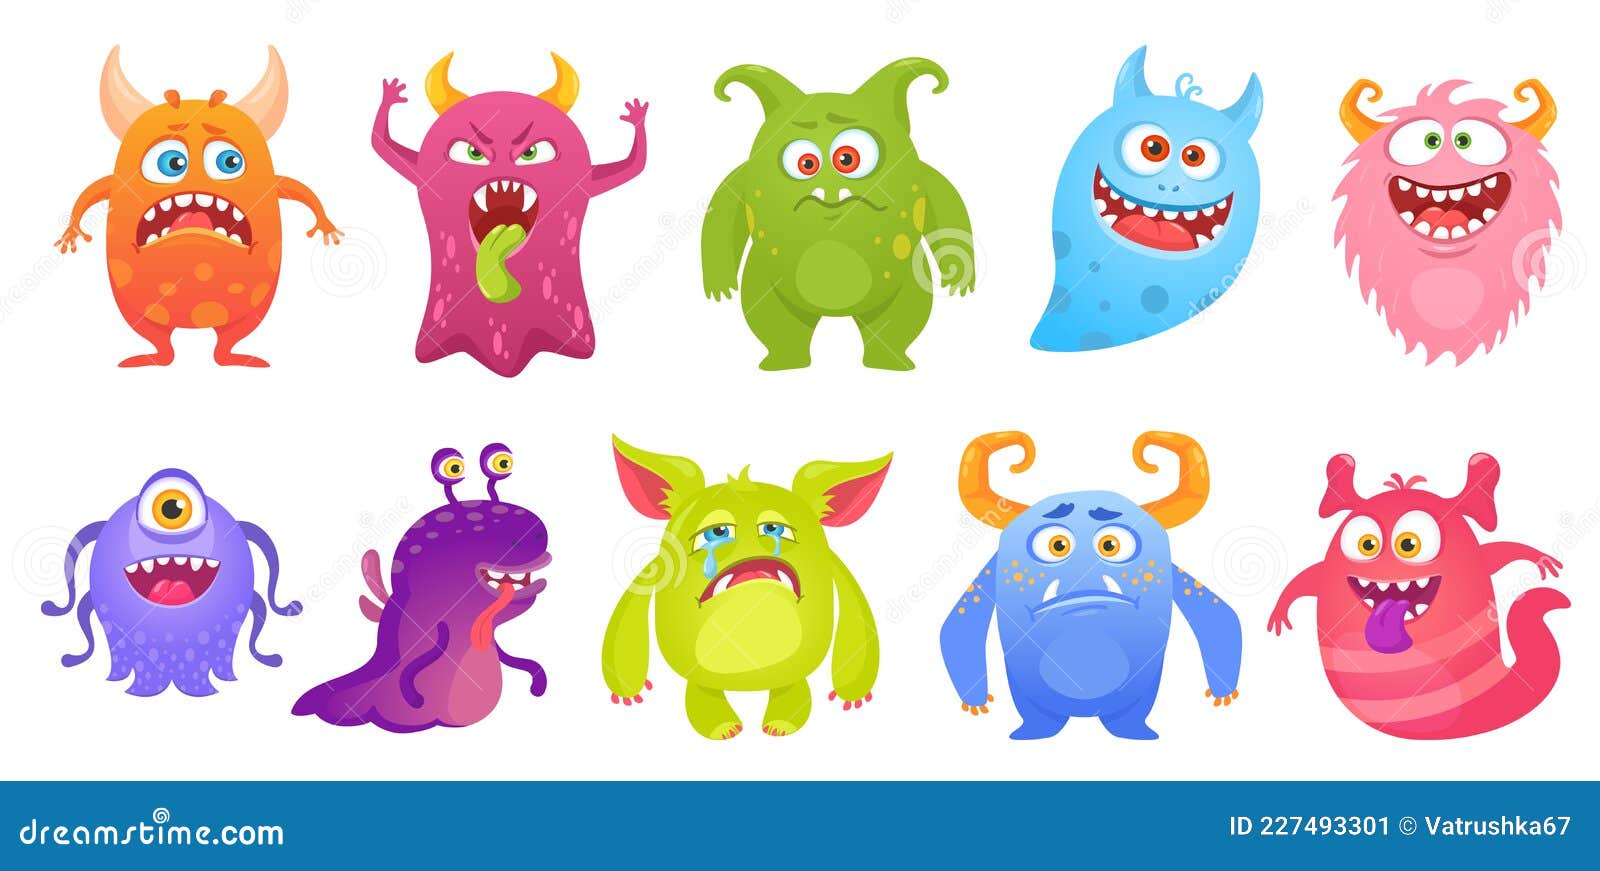 Monstros de jogos de desenhos animados criaturas alienígenas e